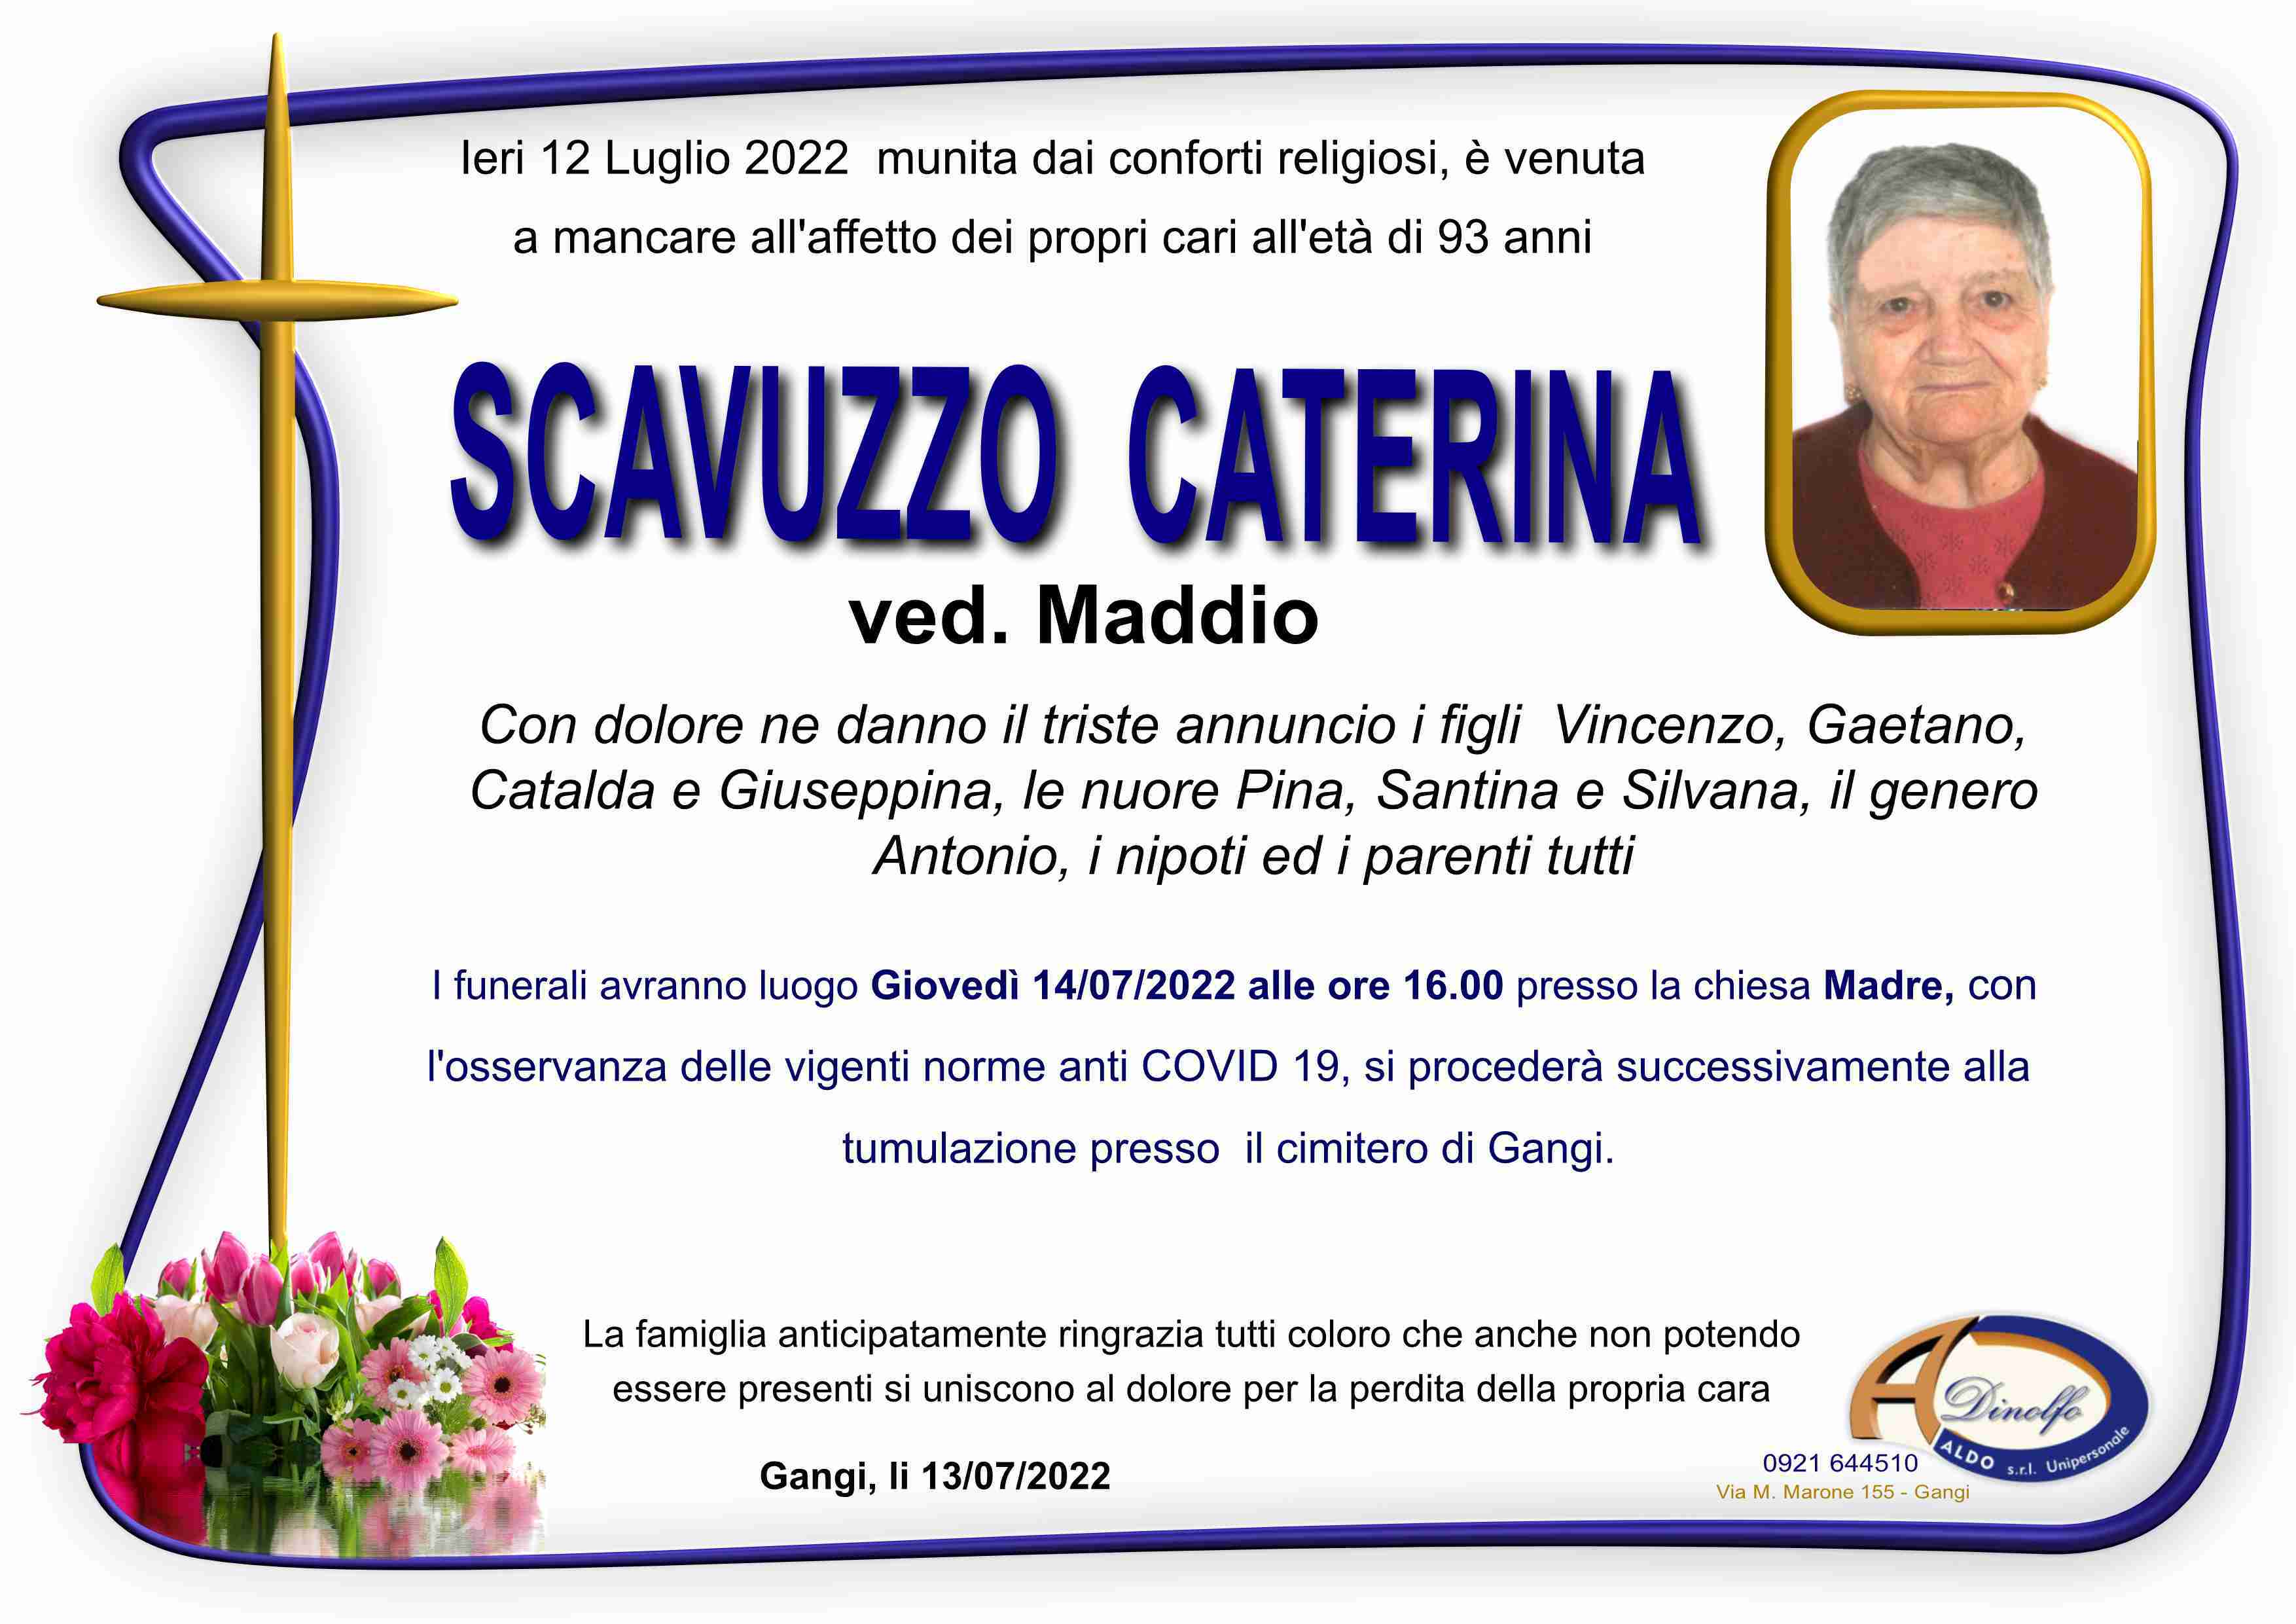 Caterina Scavuzzo